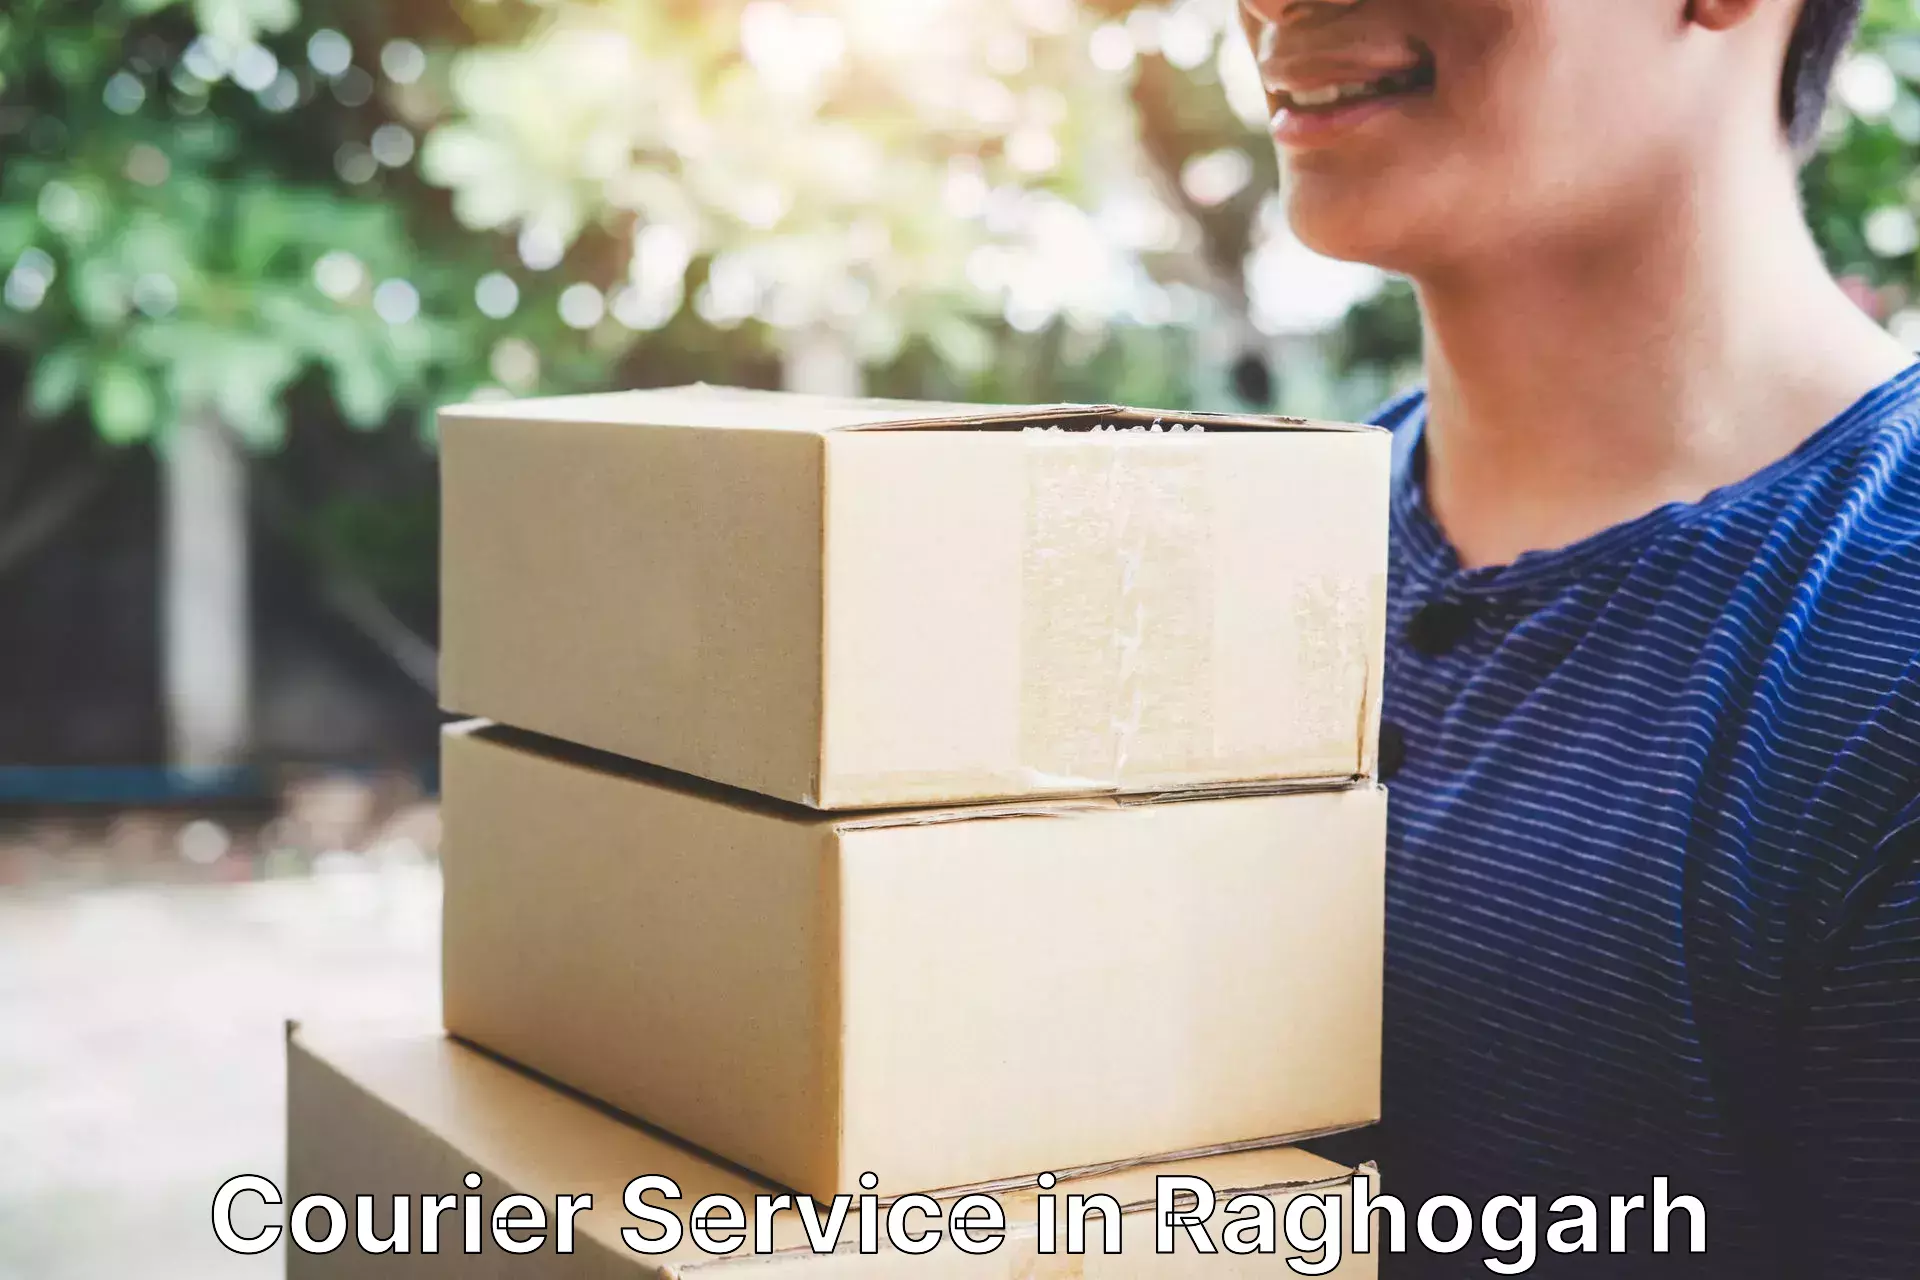 Next-generation courier services in Raghogarh